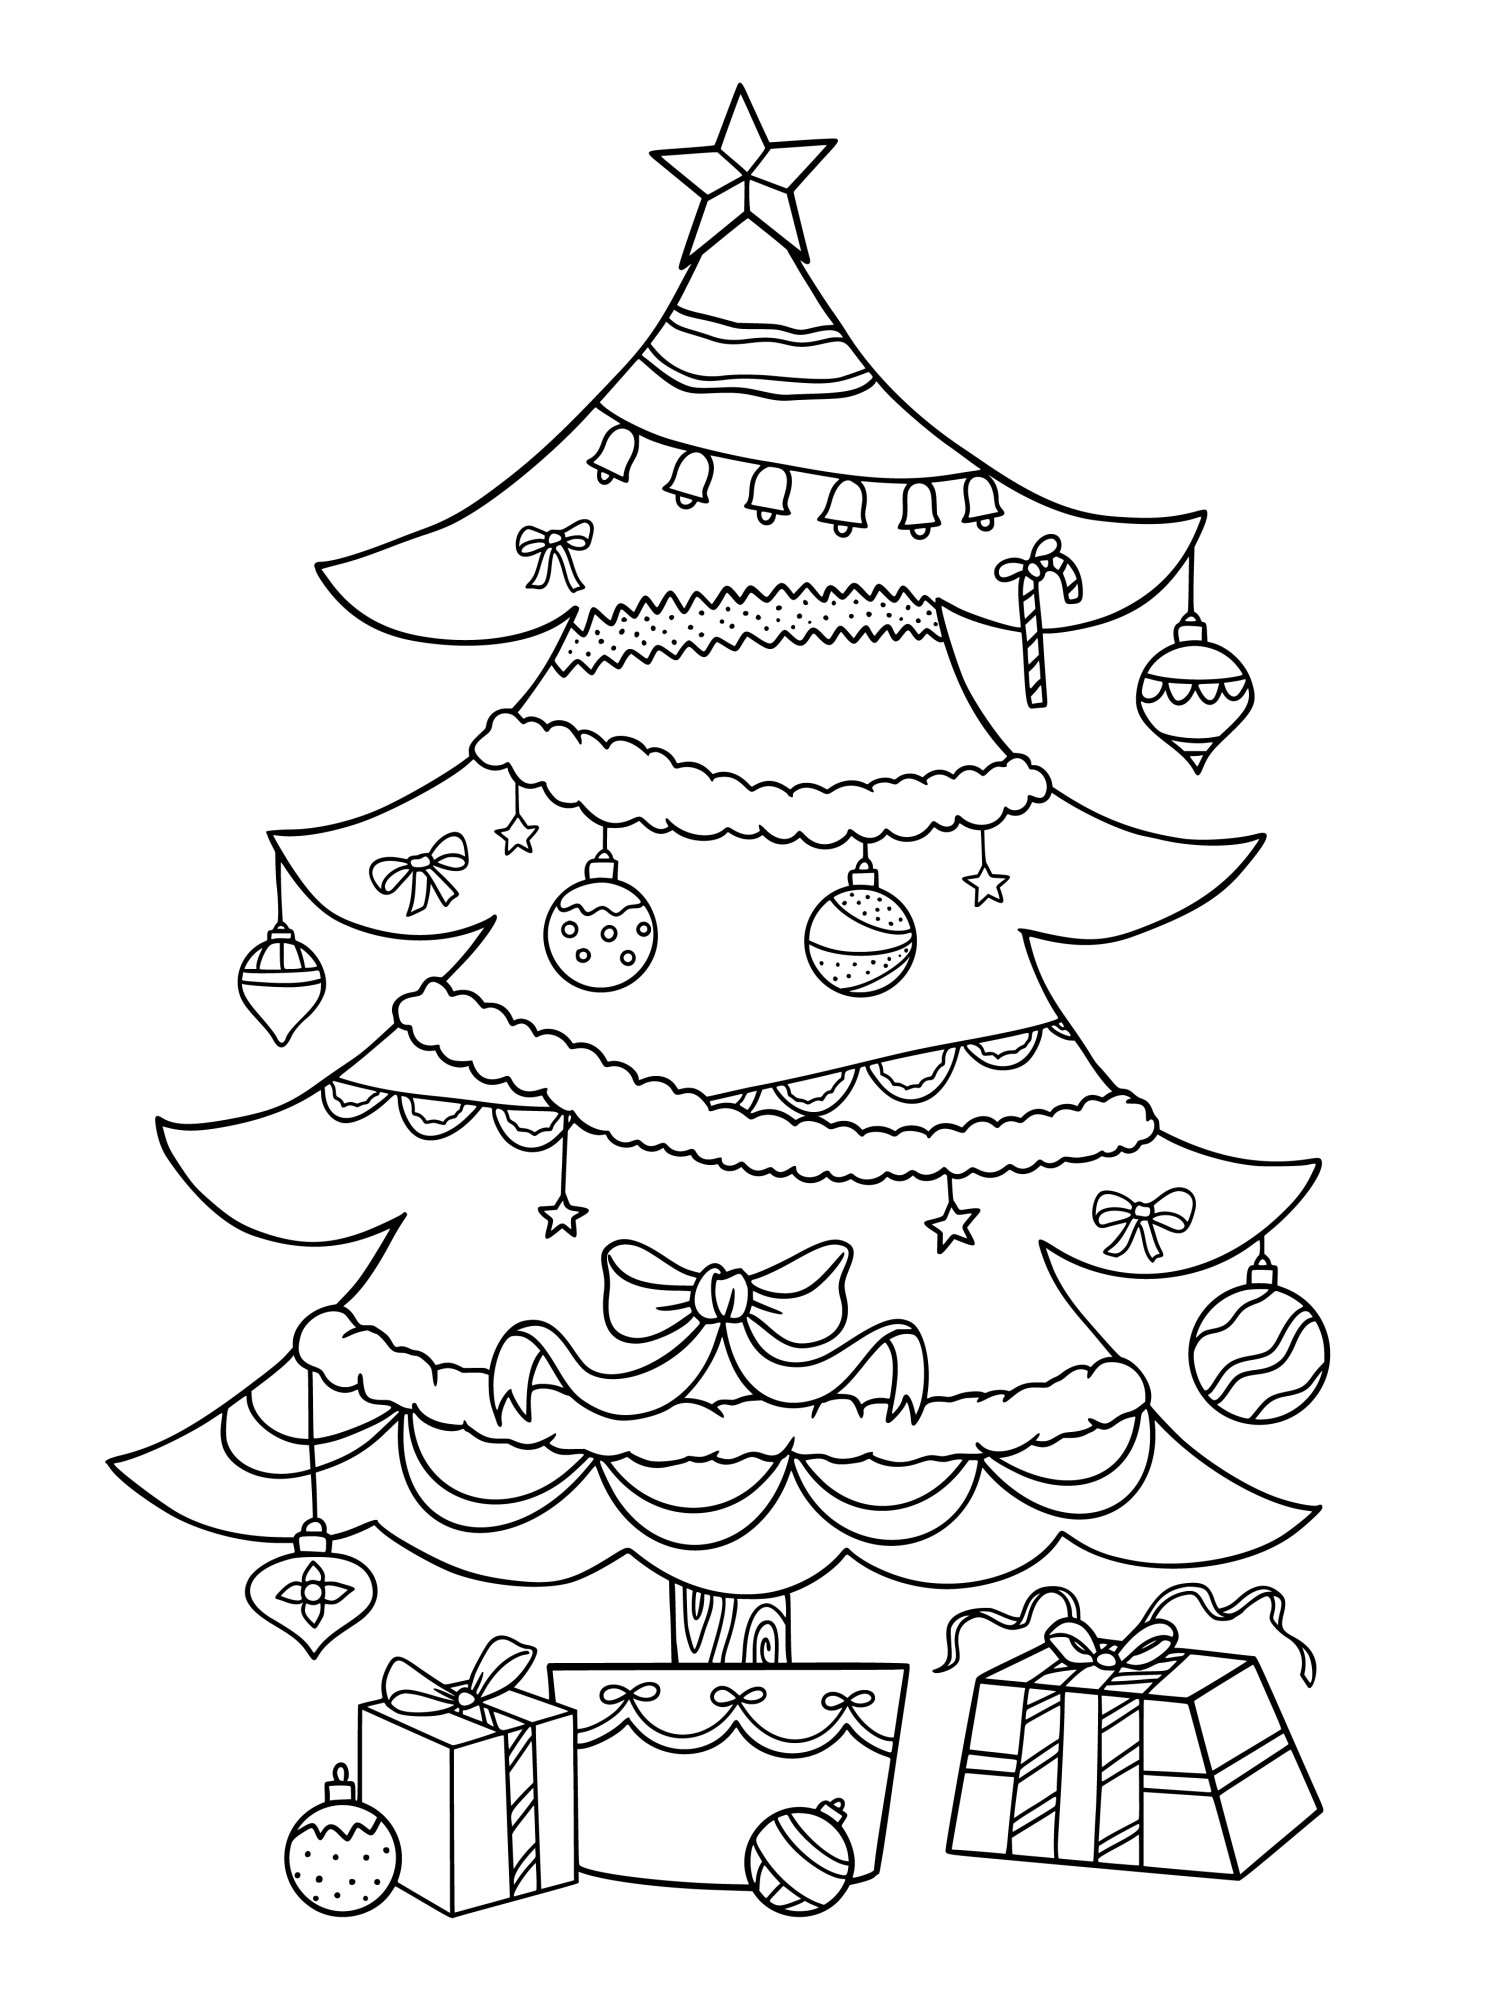 Раскраска для детей: украшенная новогодняя ёлка с подарками